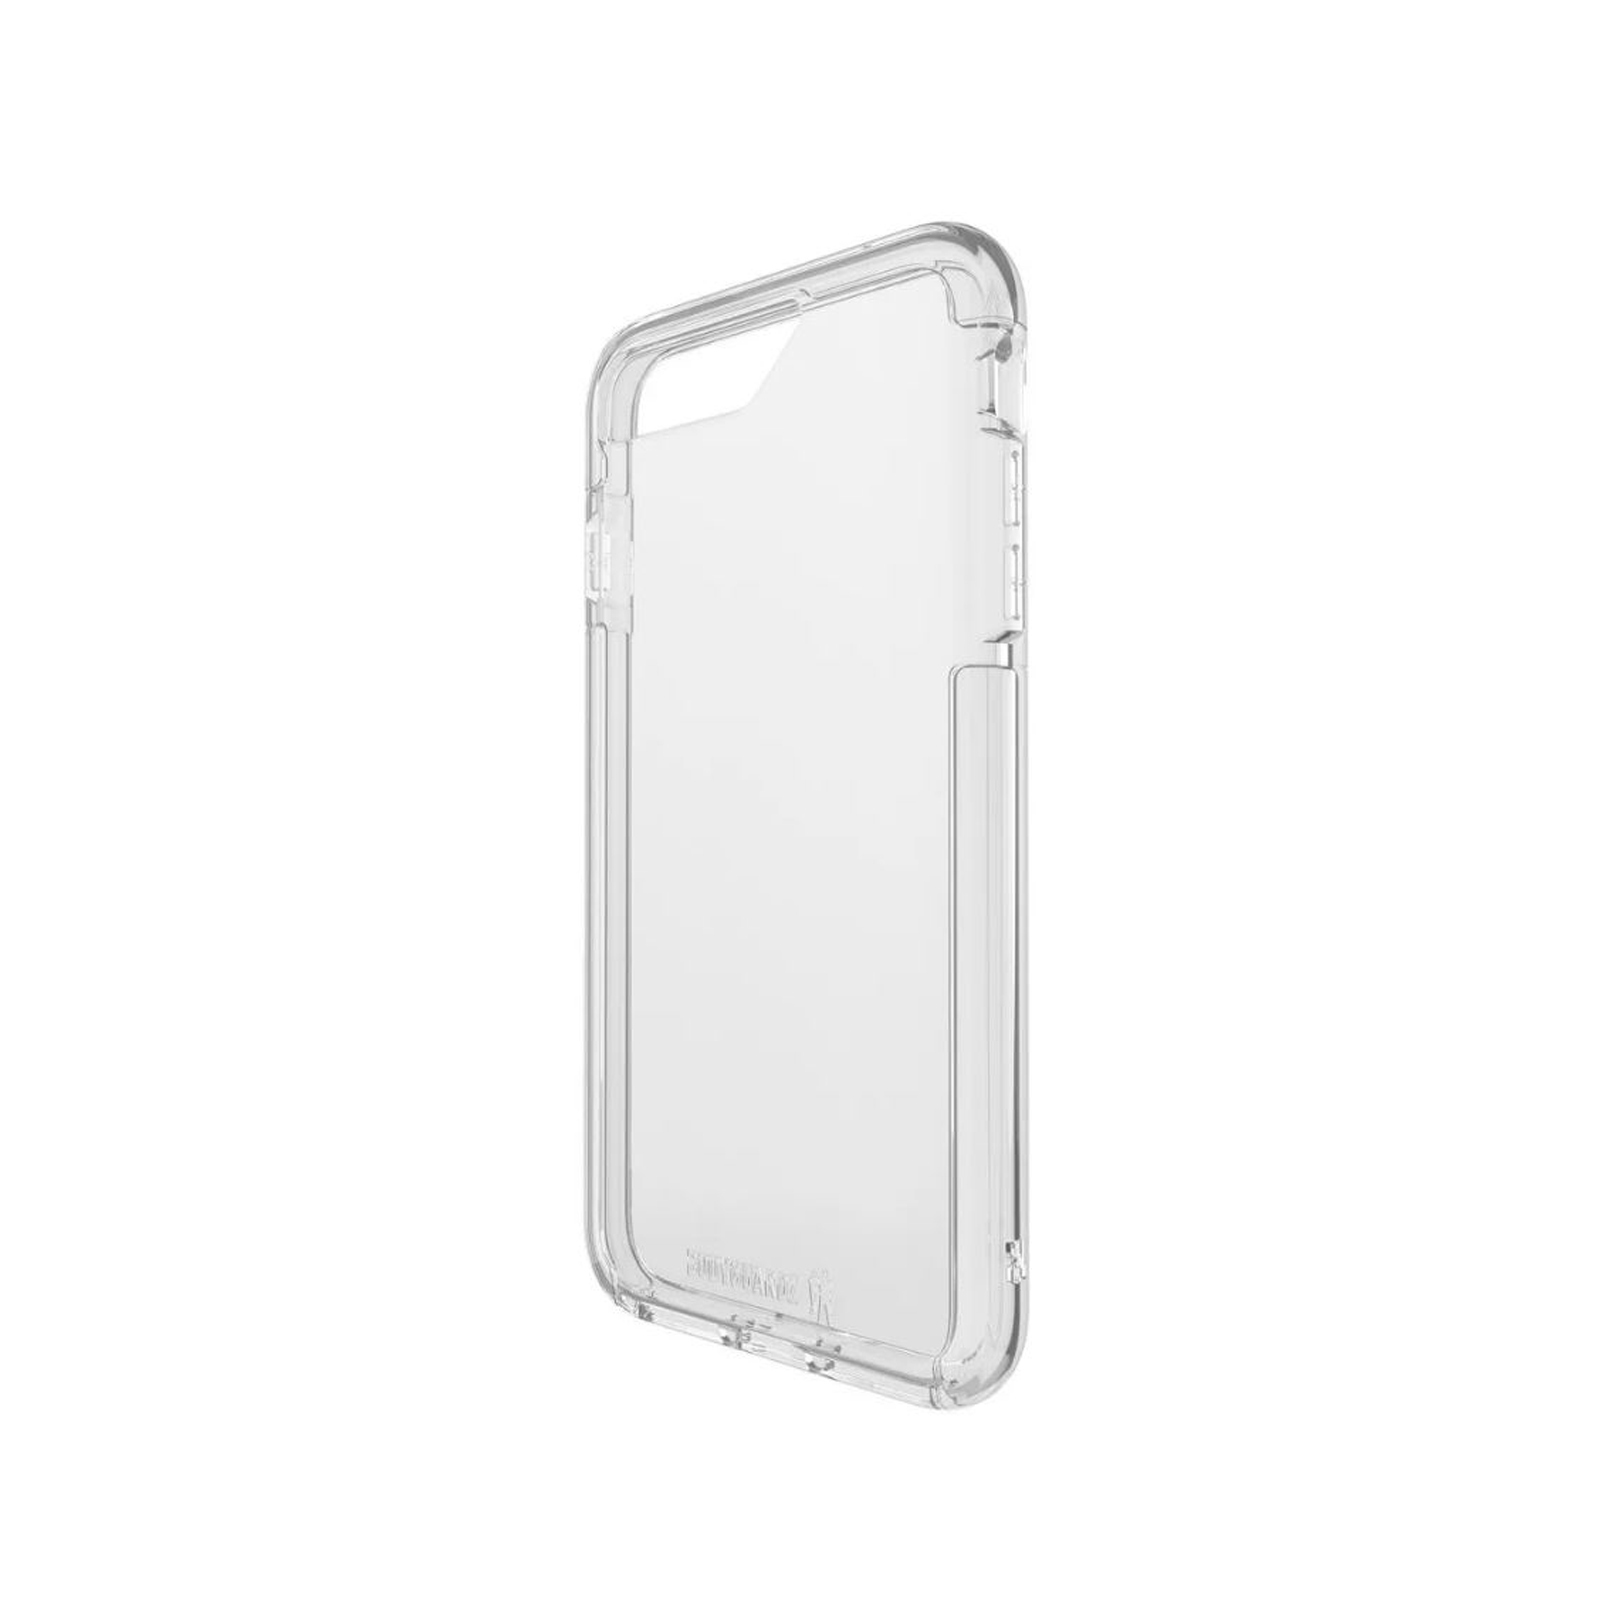 AcePro iPhone 6 Plus / 7 Plus / 8 Plus Case [Clear]